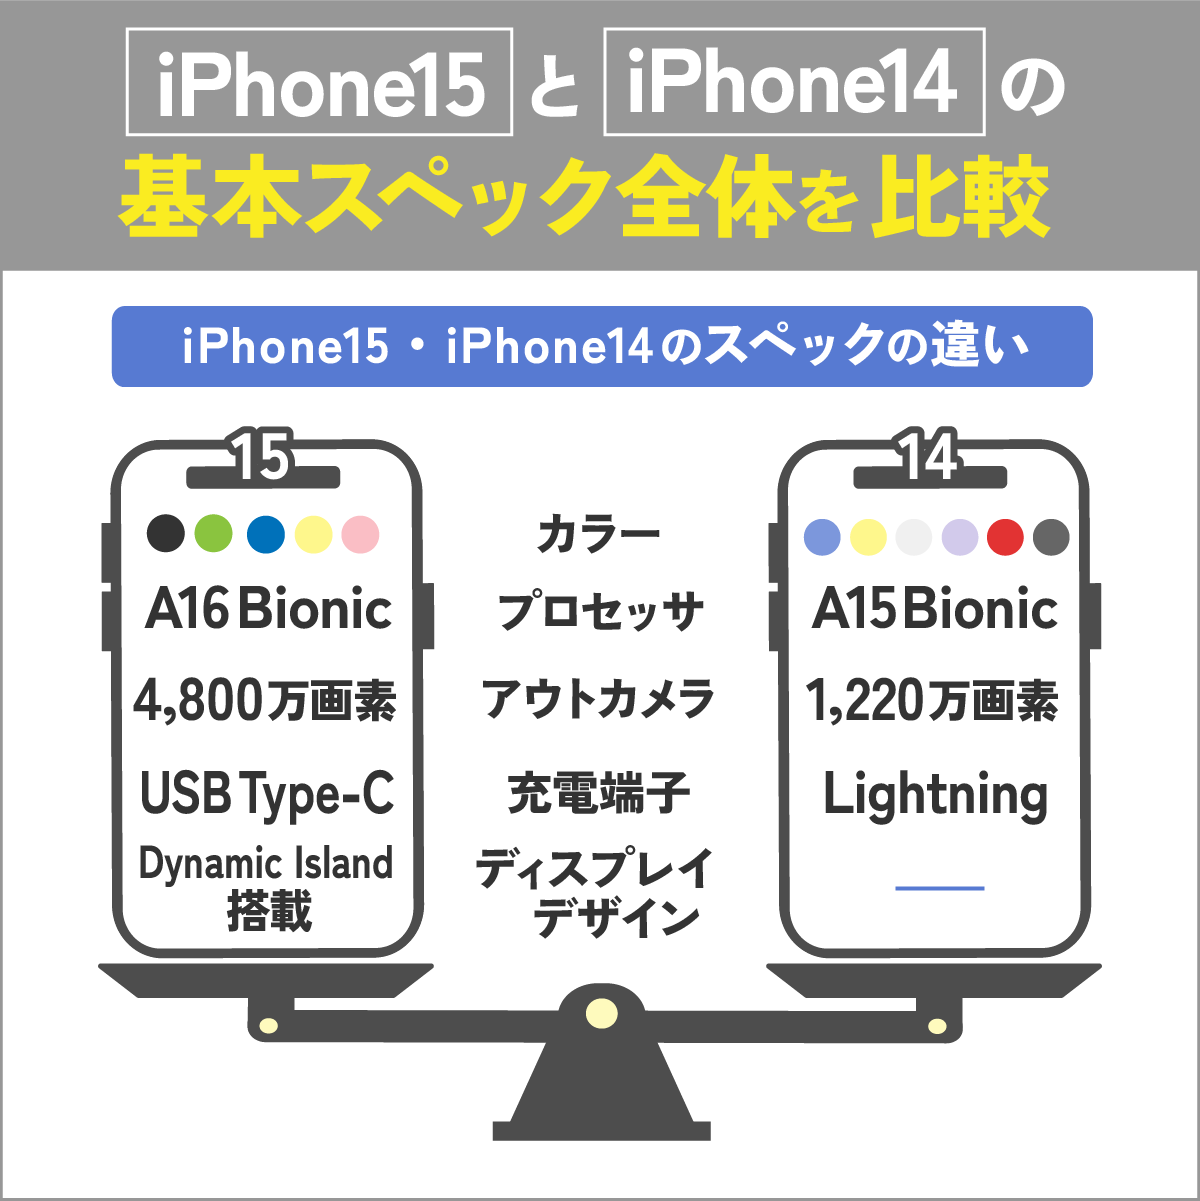 iPhone15とiPhone14の基本スペック全体を比較